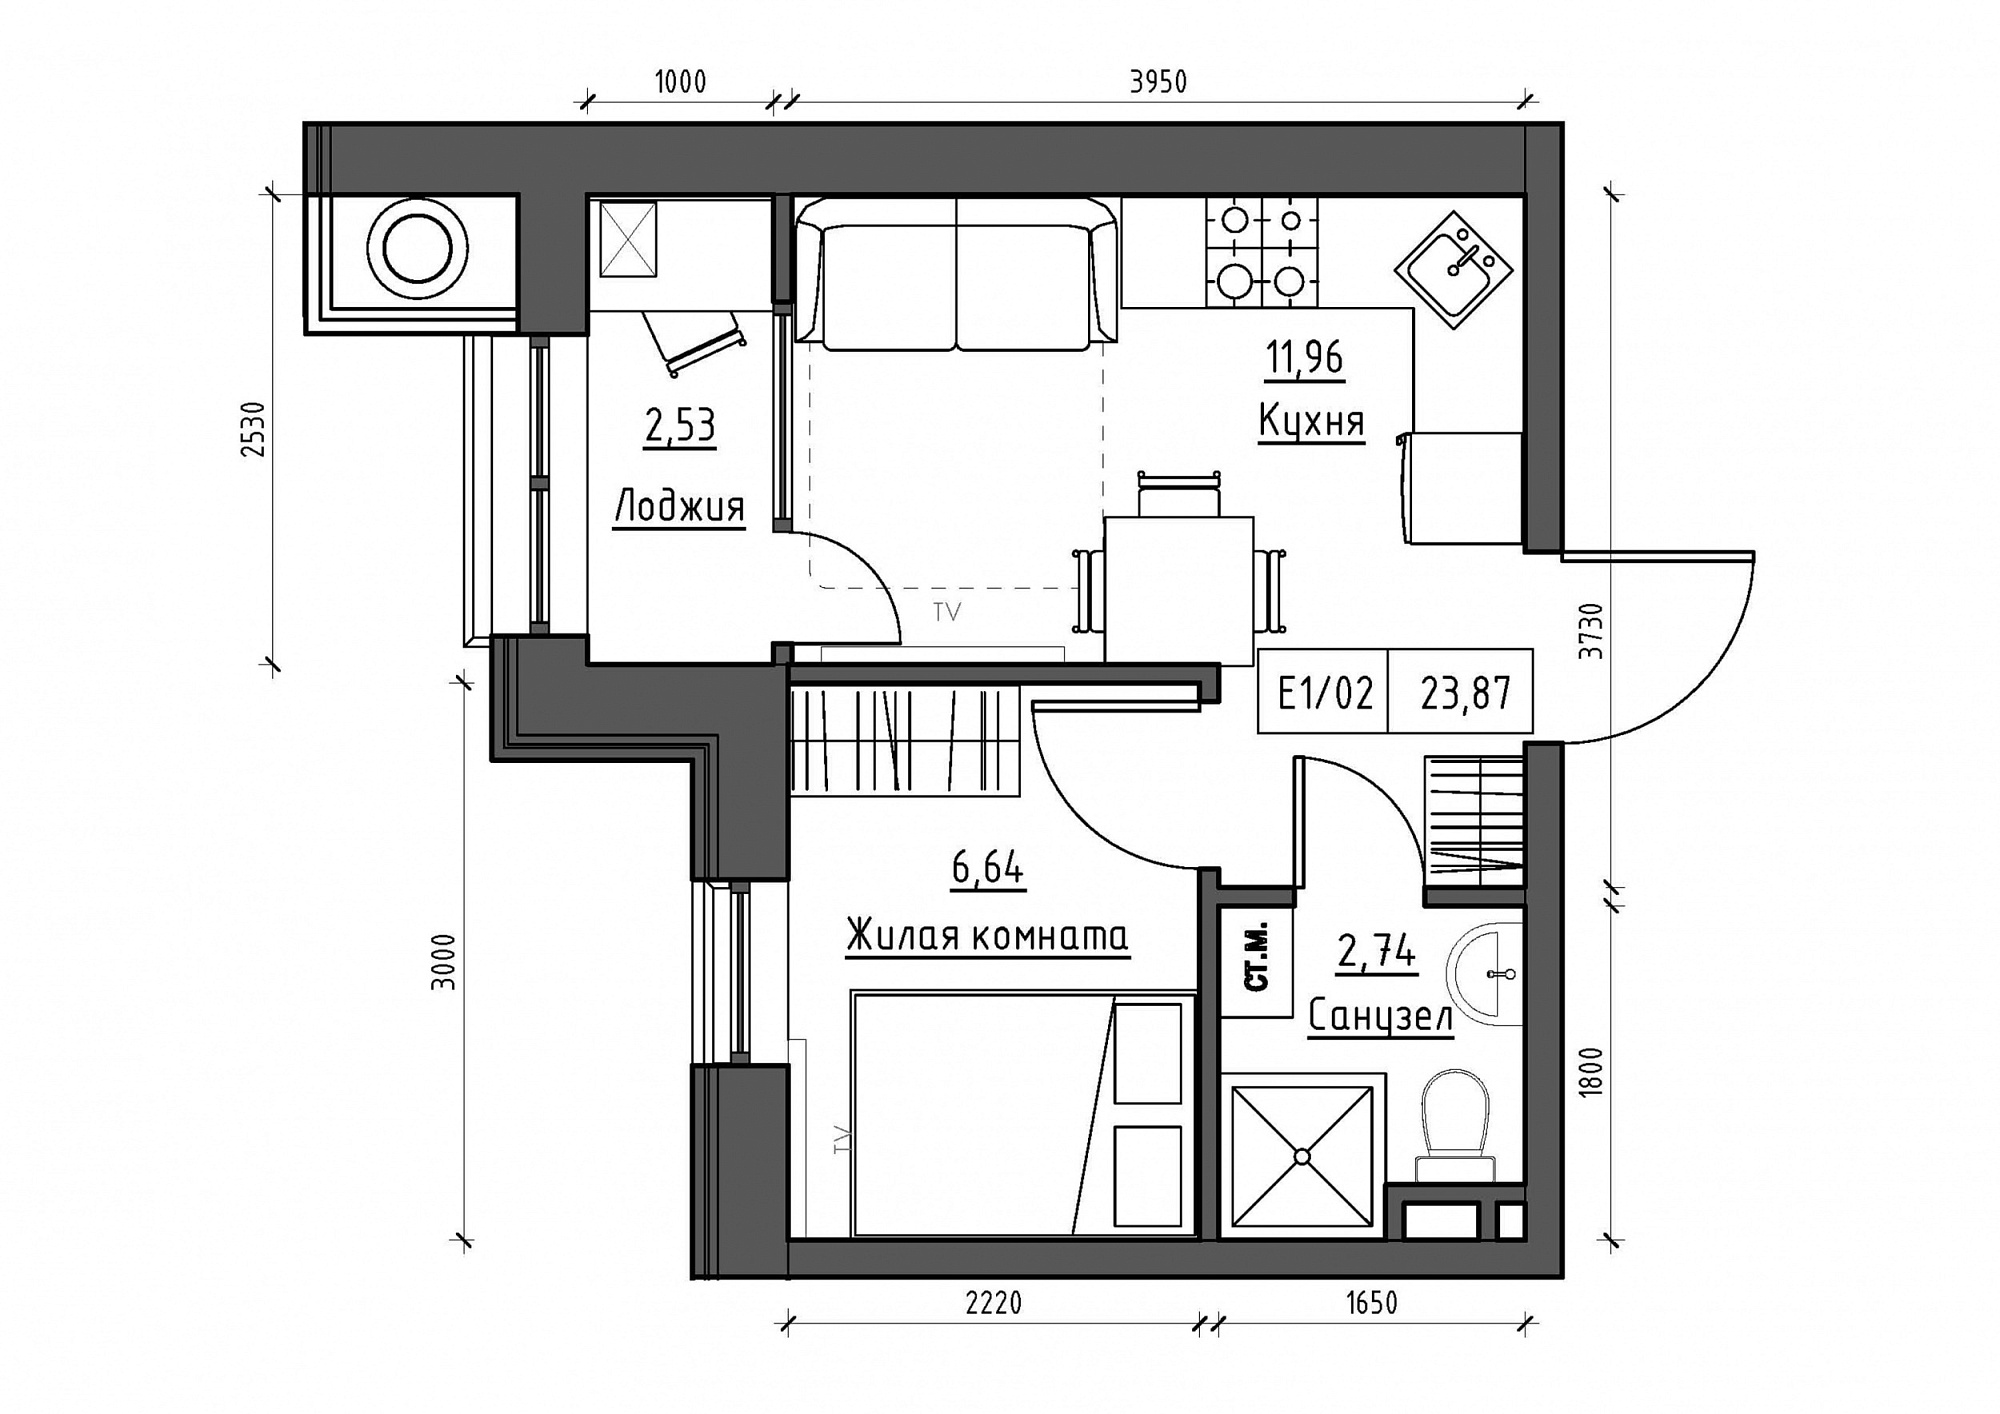 Планировка 1-к квартира площей 23.87м2, KS-011-04/0001.